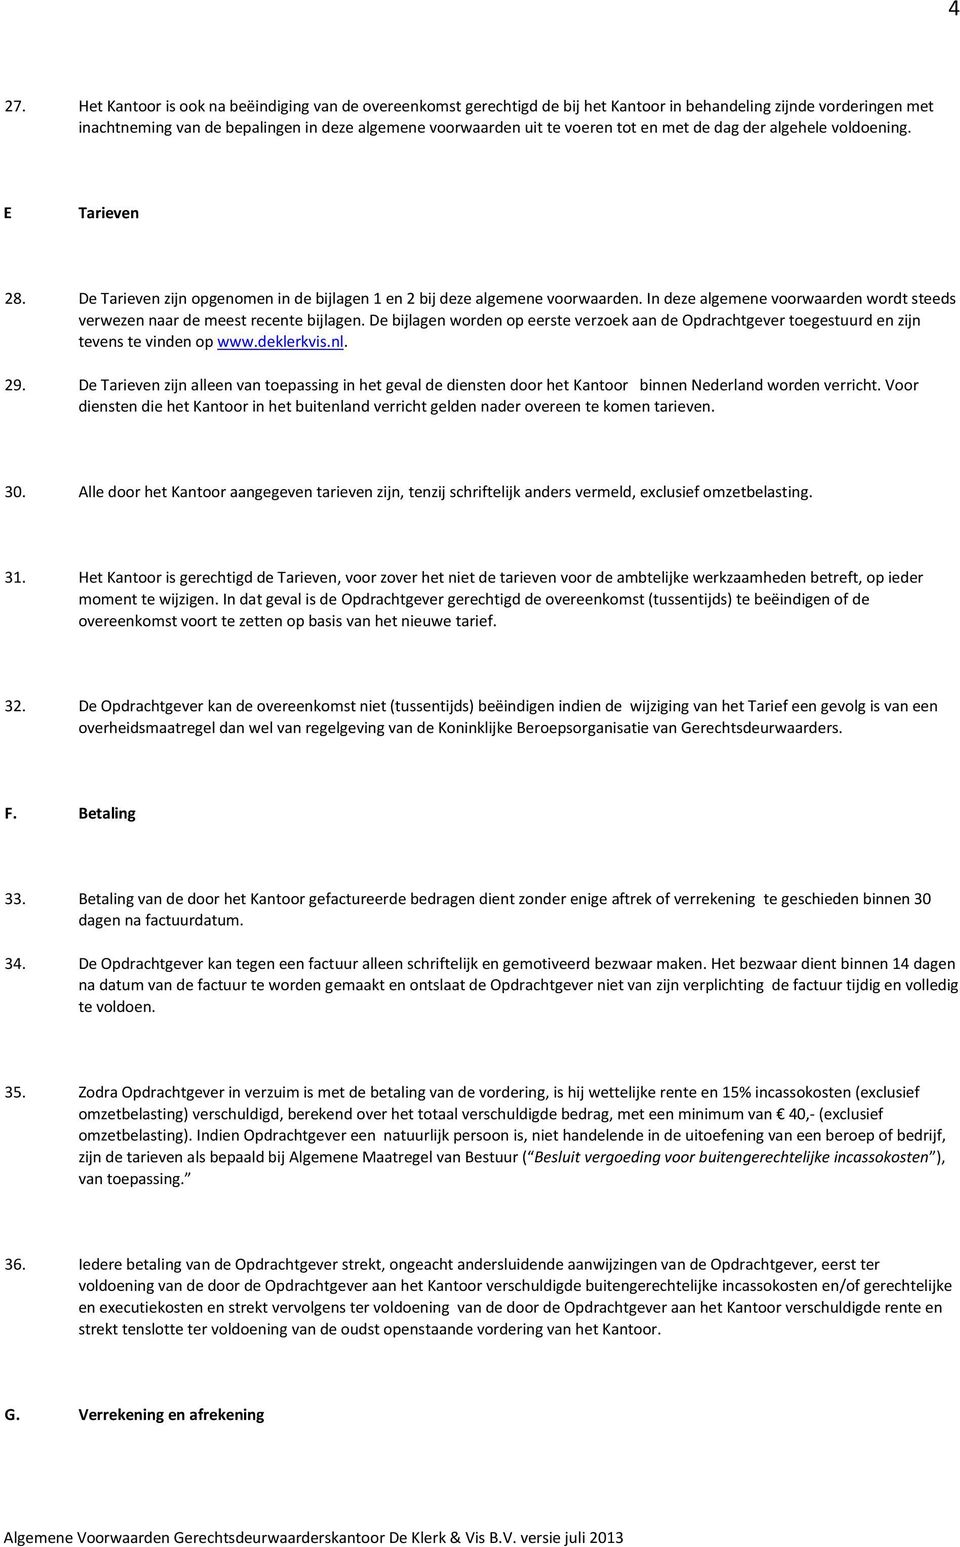 In deze algemene voorwaarden wordt steeds verwezen naar de meest recente bijlagen. De bijlagen worden op eerste verzoek aan de Opdrachtgever toegestuurd en zijn tevens te vinden op www.deklerkvis.nl.